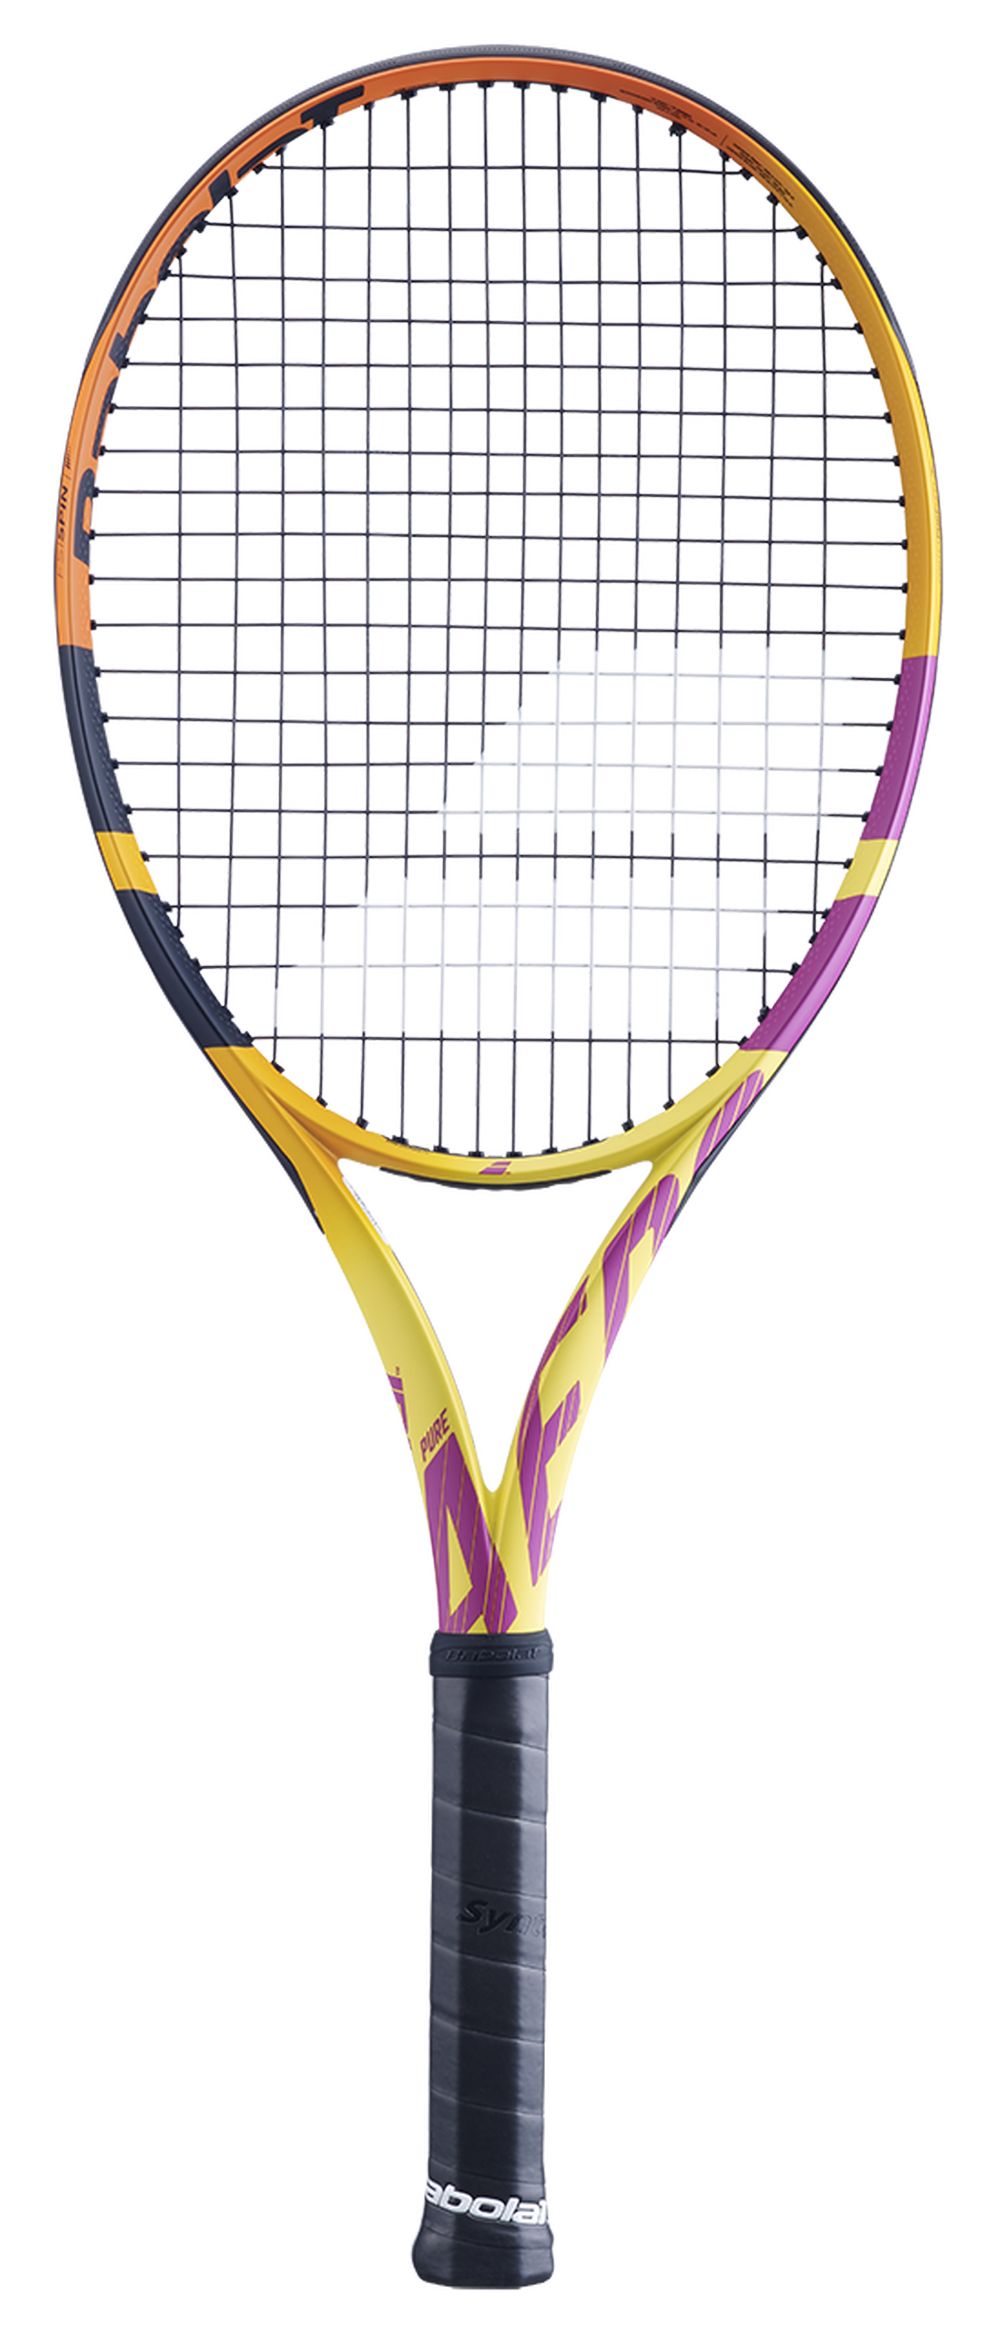 バボラ Babolat テニス 硬式テニスラケット PURE AERO RAFA ピュア アエロ ラファ 101455J　ラファエル・ナダル選手  シグネチャーモデル フレームのみ : 101455j : KPI - 通販 - Yahoo!ショッピング